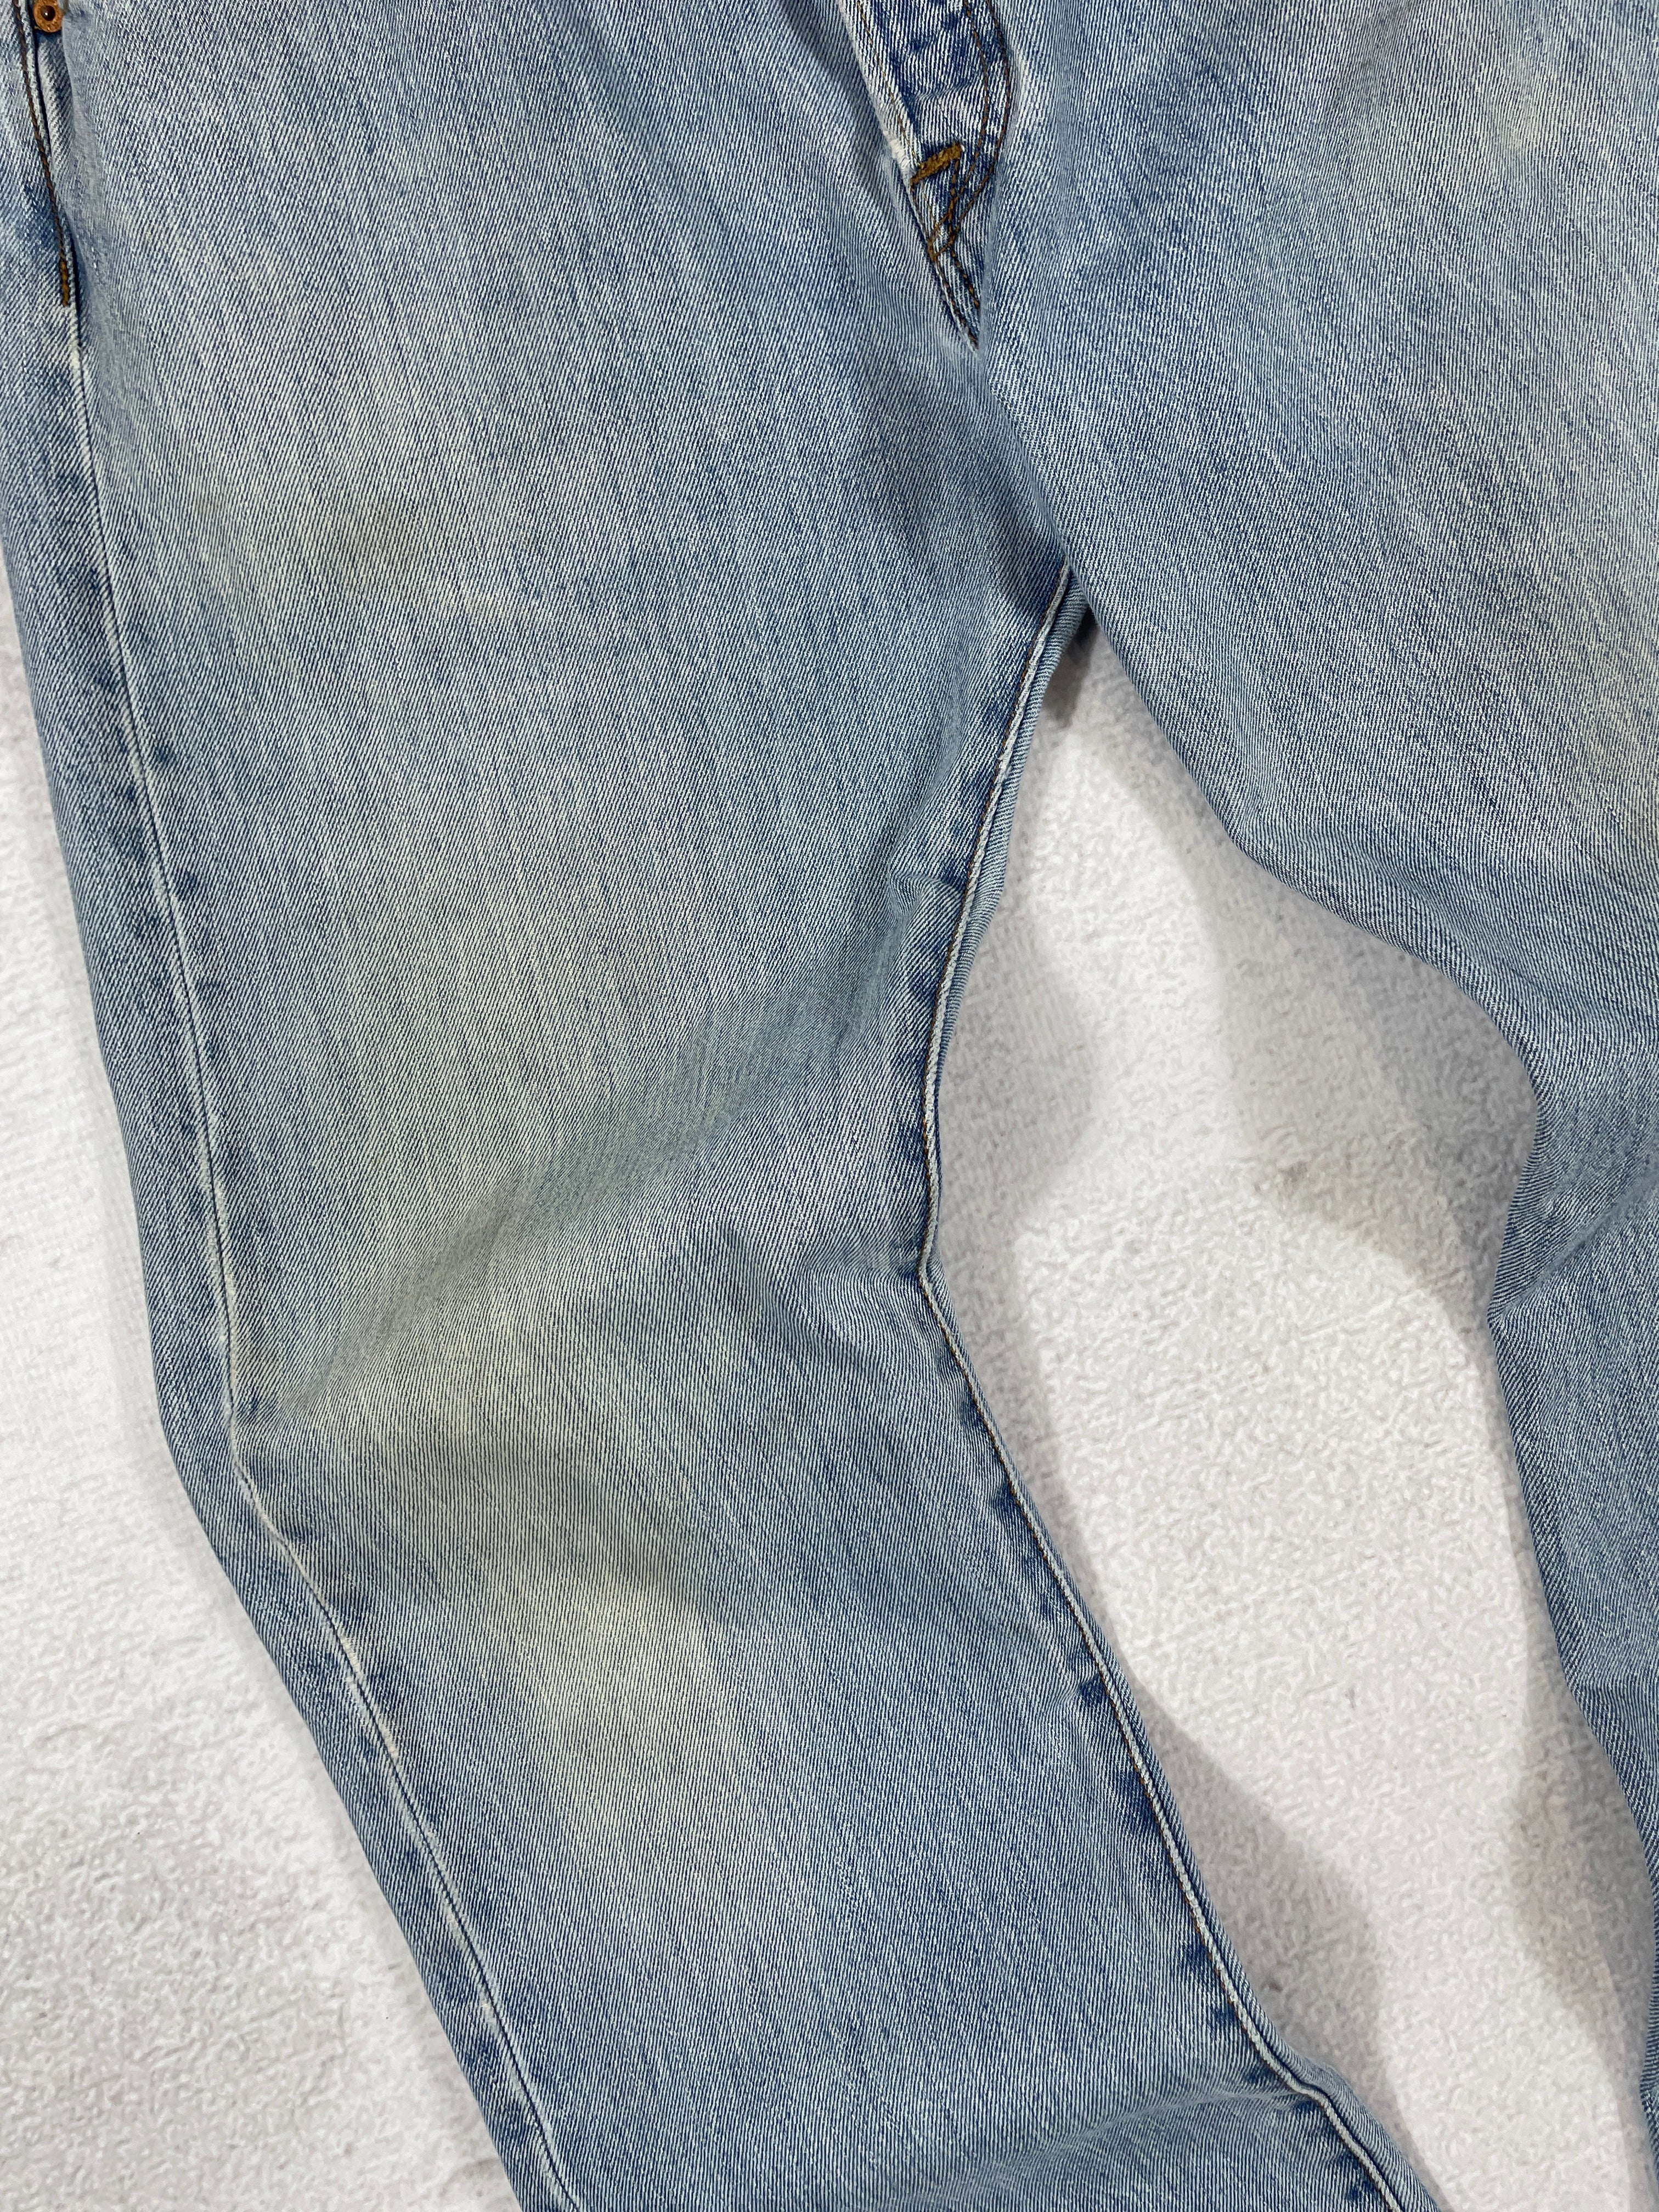 Vintage Levis 501 Jeans - Men's 36Wx32L